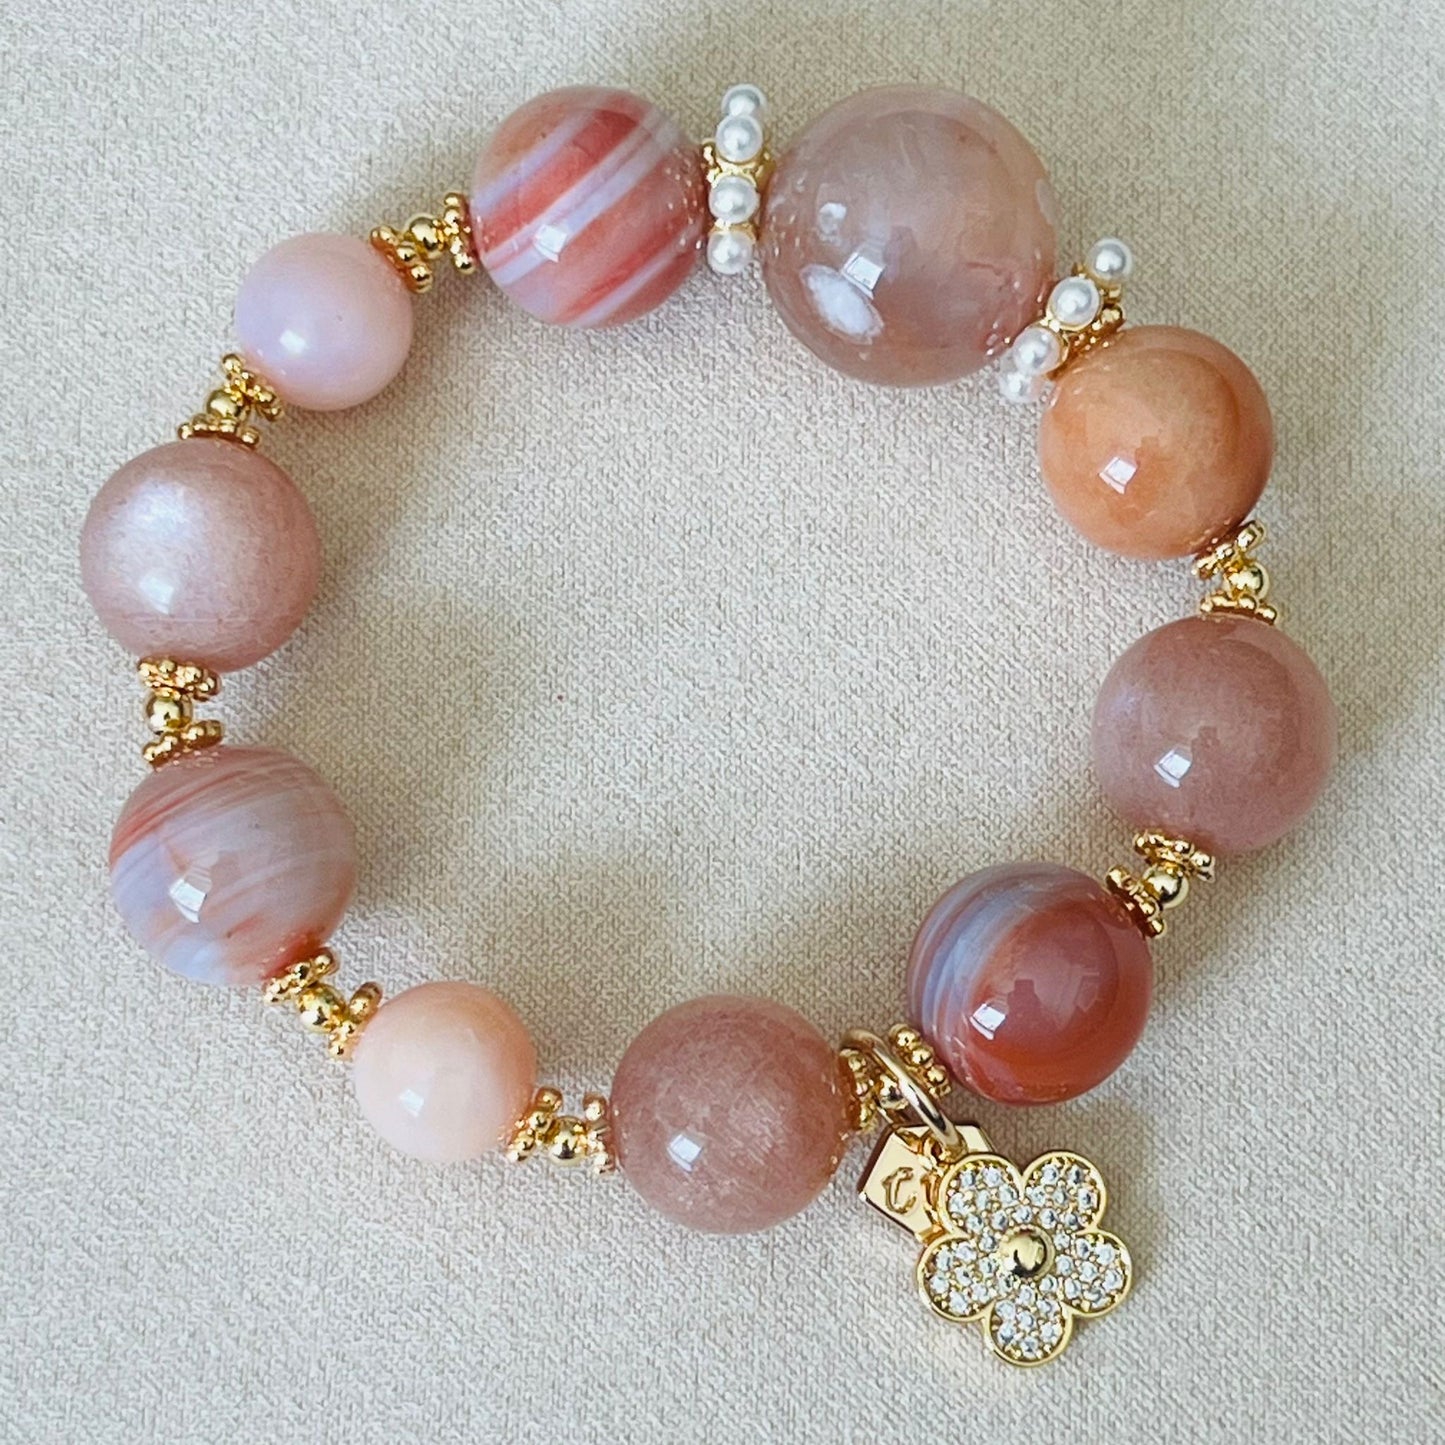 Peach Garden Crown Bracelet